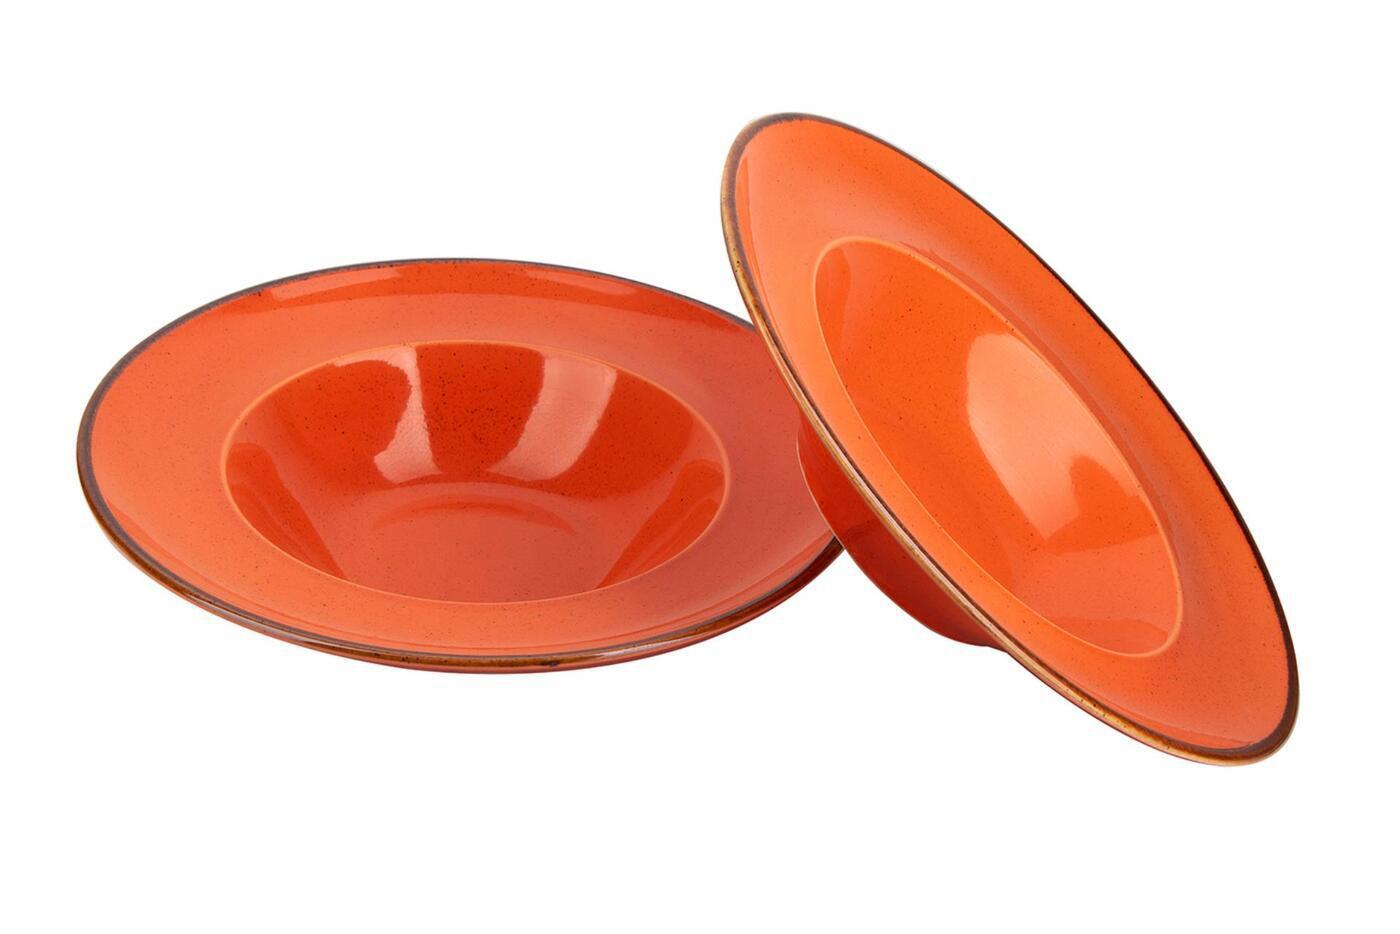 90233307 Набор глубоких тарелок для пасты 2 предмета Seasons 25 см 500 мл цвет оранжевый STLM-0142123 PORLAND